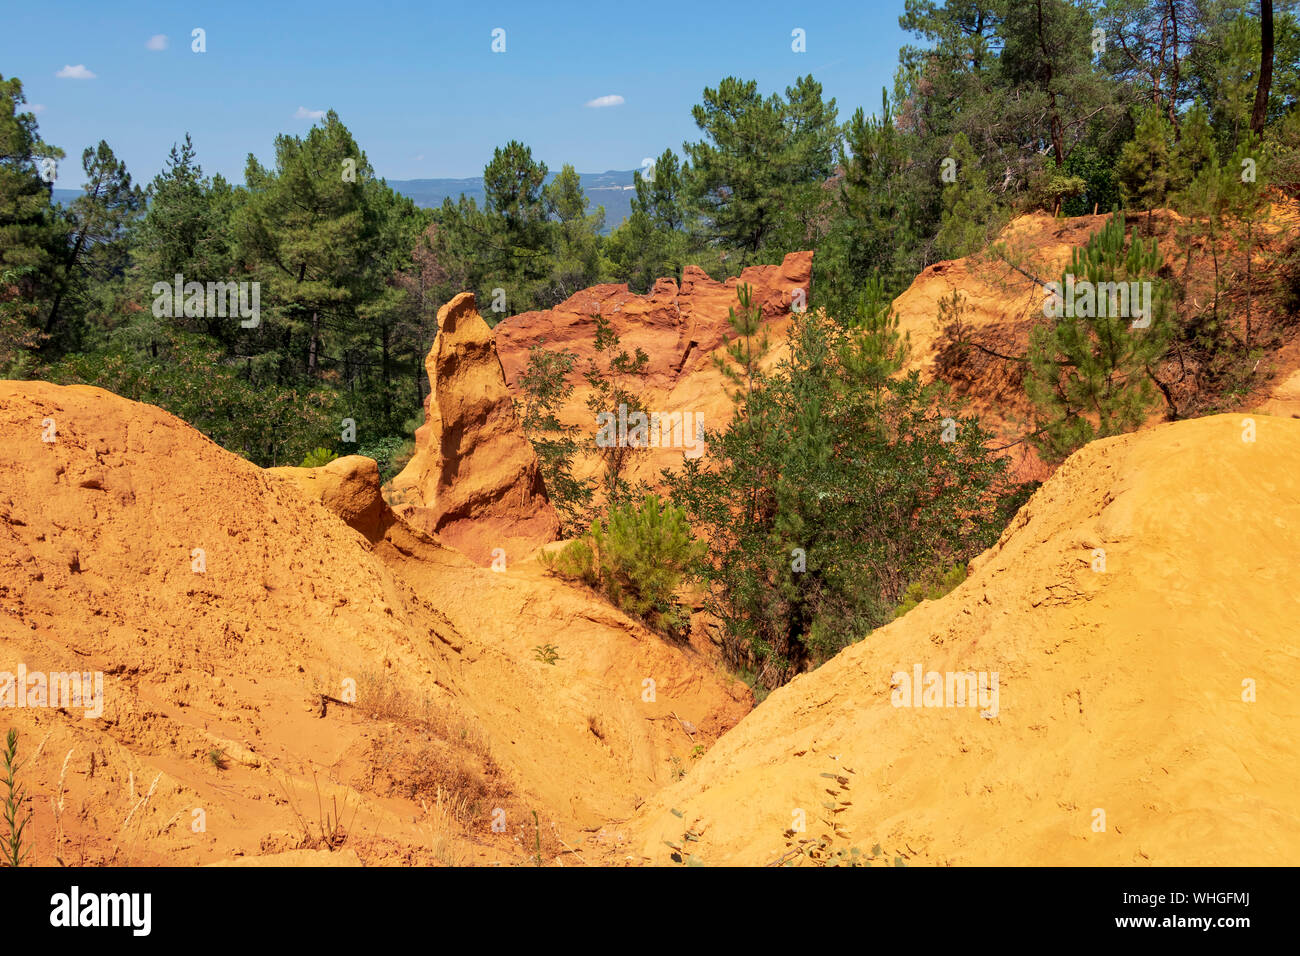 Ocker Trail im Roussillon, Sentier des Ocres, Wanderweg in einer natürlichen bunte Fläche von roten und gelben Felsen in ein stillgelegtes Ocker pigment Steinbruch surrou Stockfoto